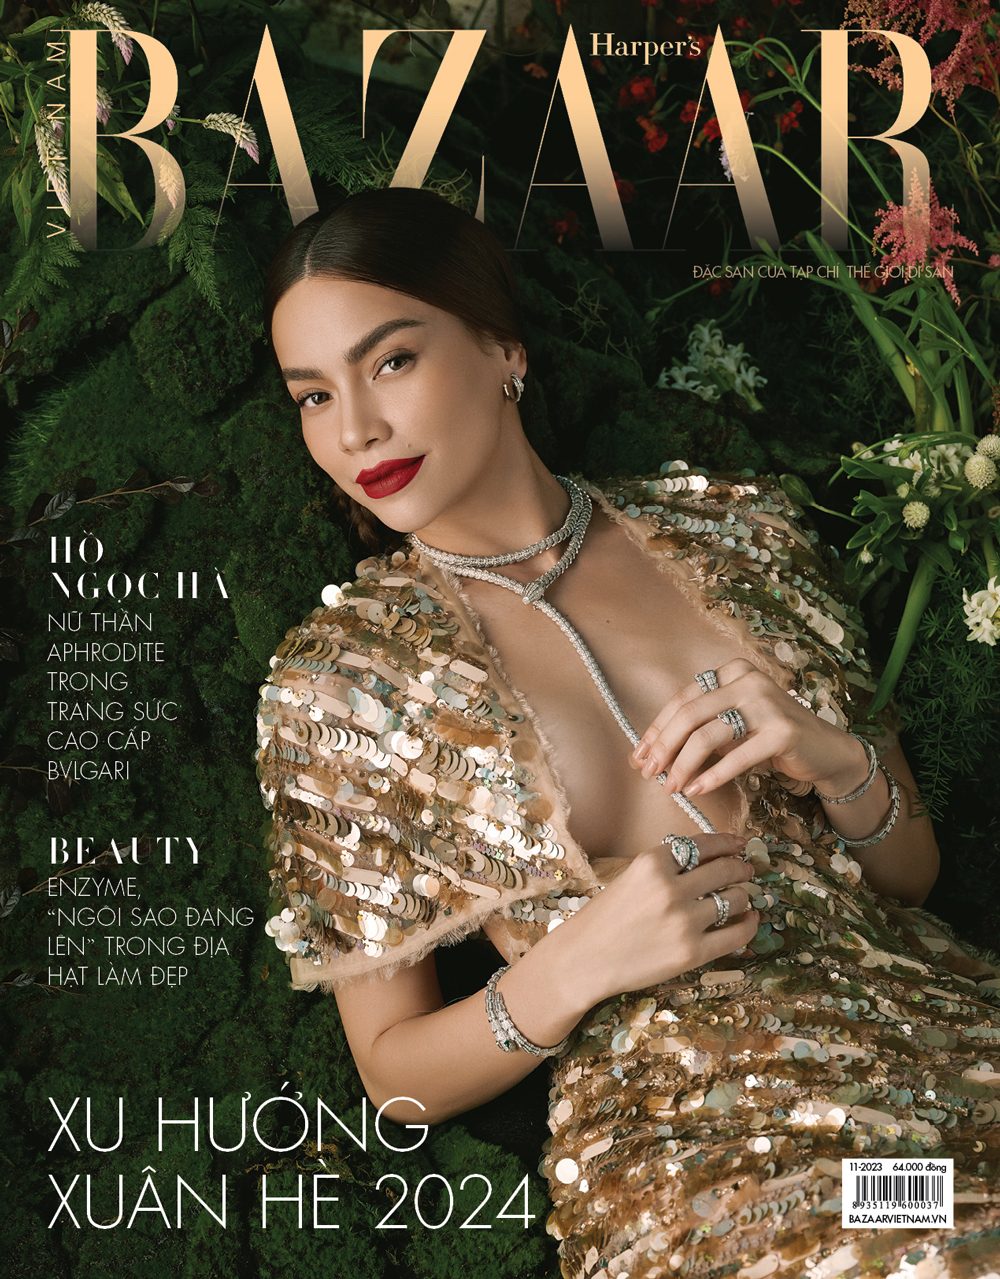 Hồ Ngọc Hà trên trang bìa Harper's Bazaar Việt Nam 11–2023. Trang sức, Bulgari Serpenti. Đầm, Công Trí 